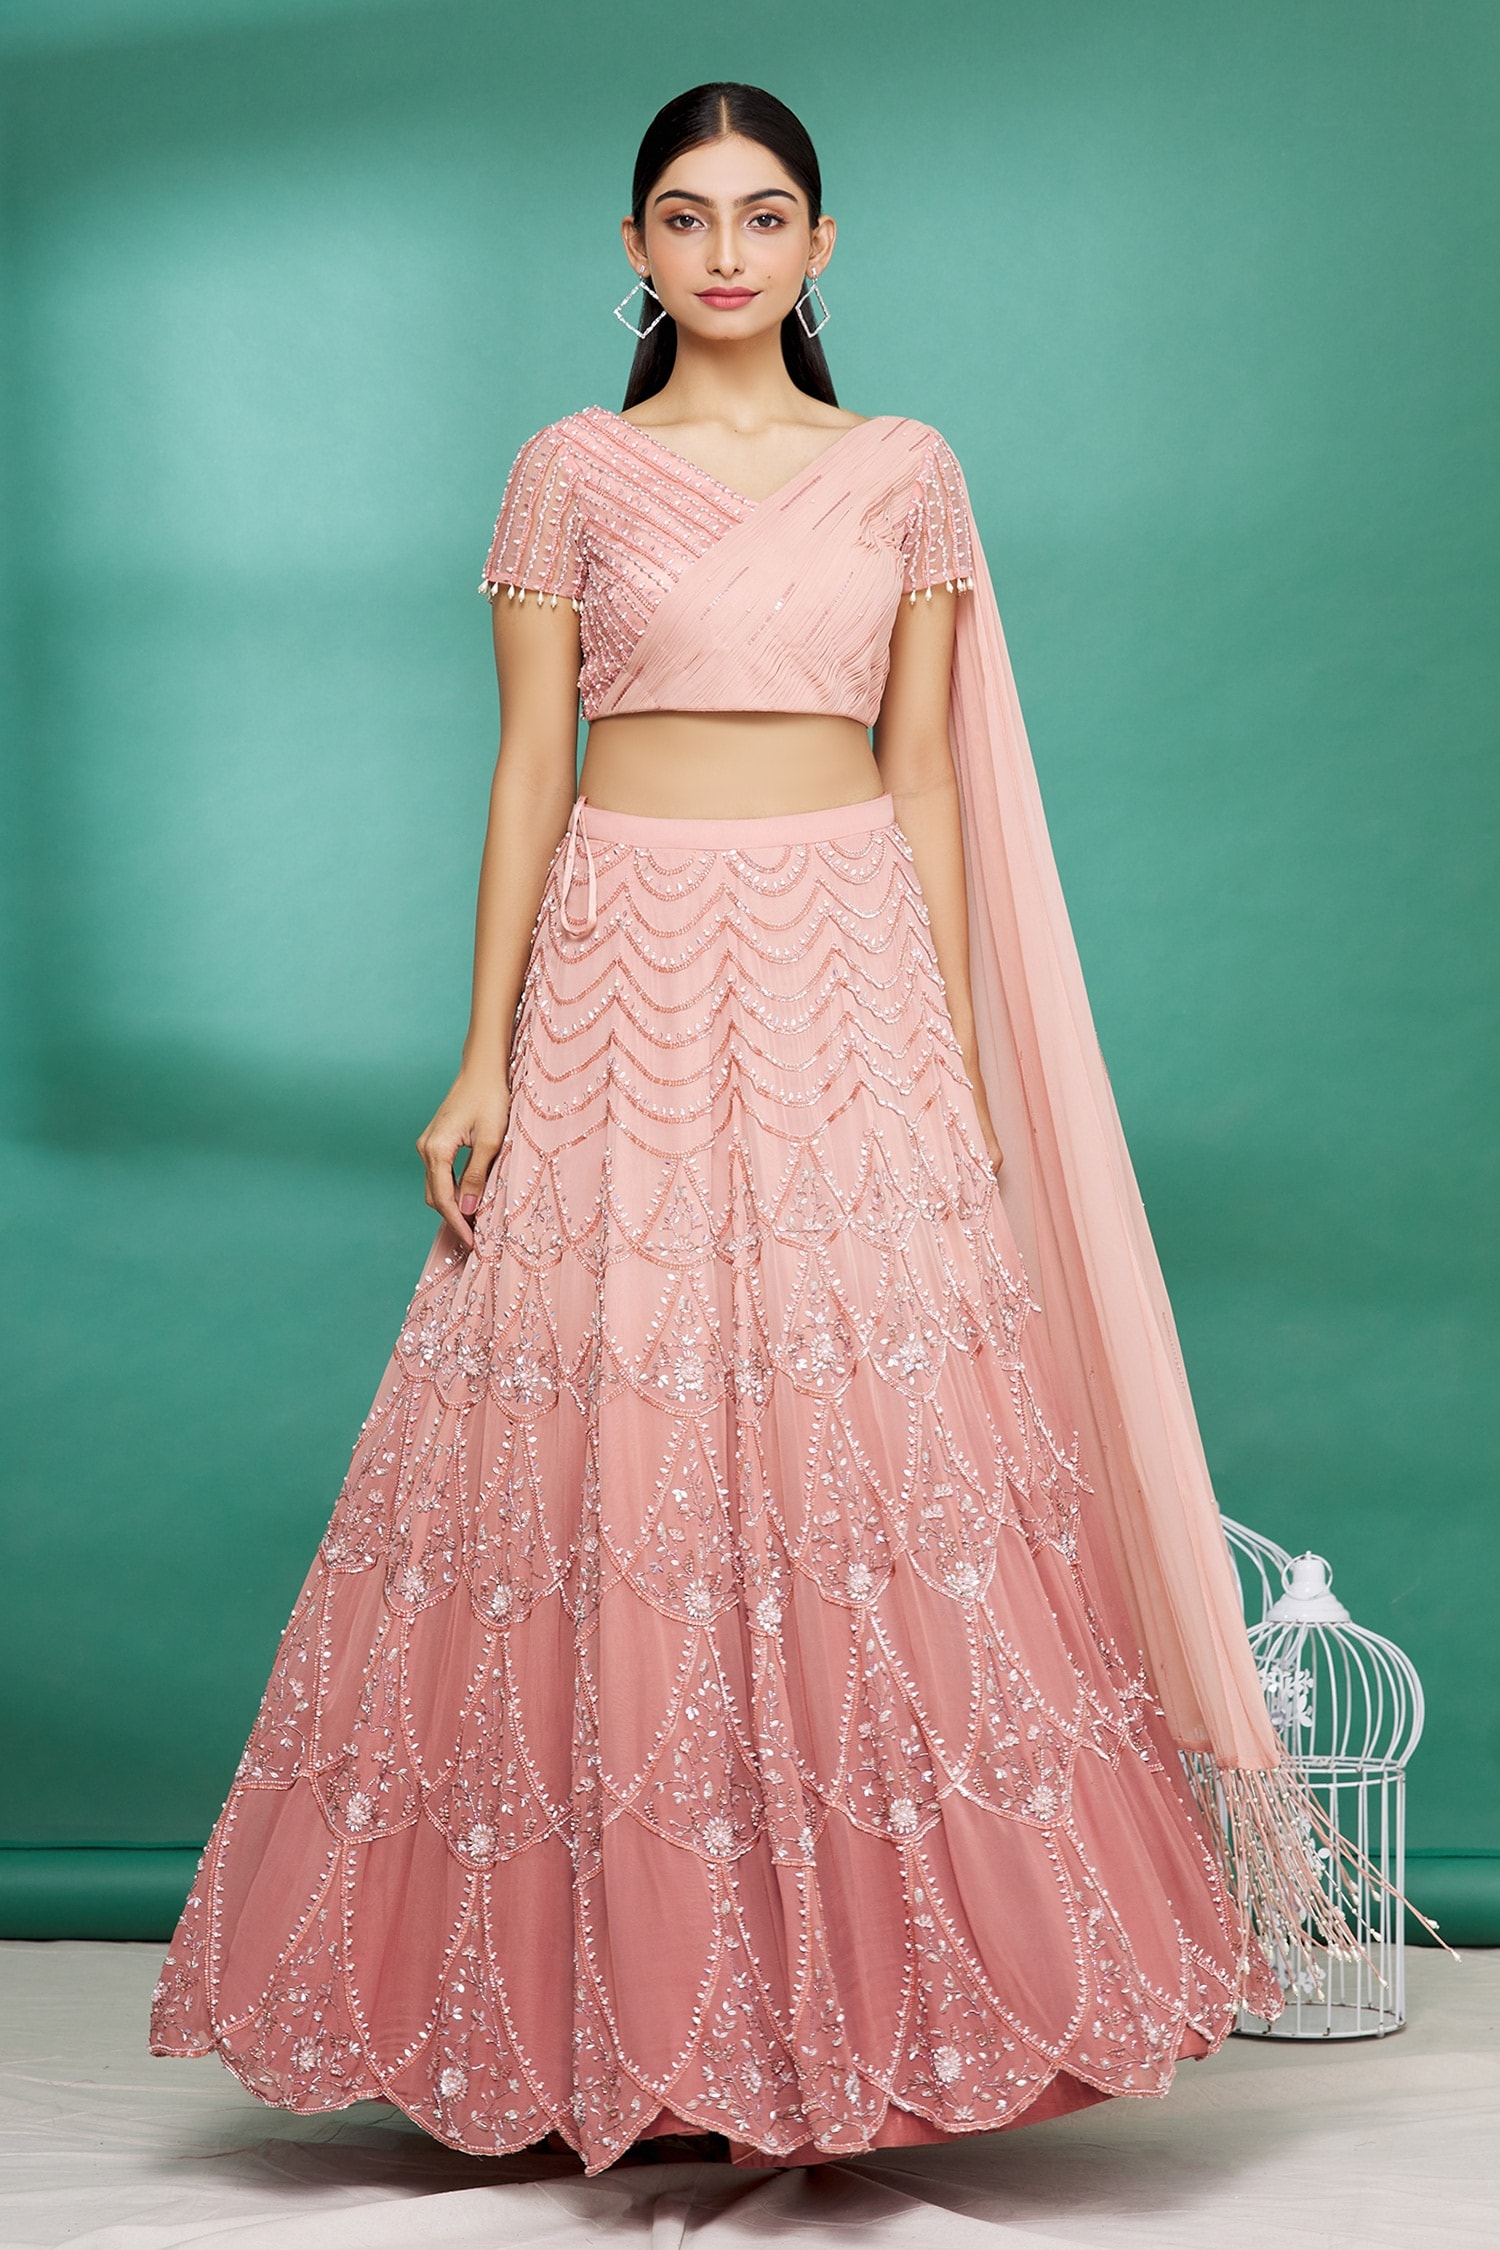 Ethnic Wear By Anushrree Reddy-Indian Wedding Season